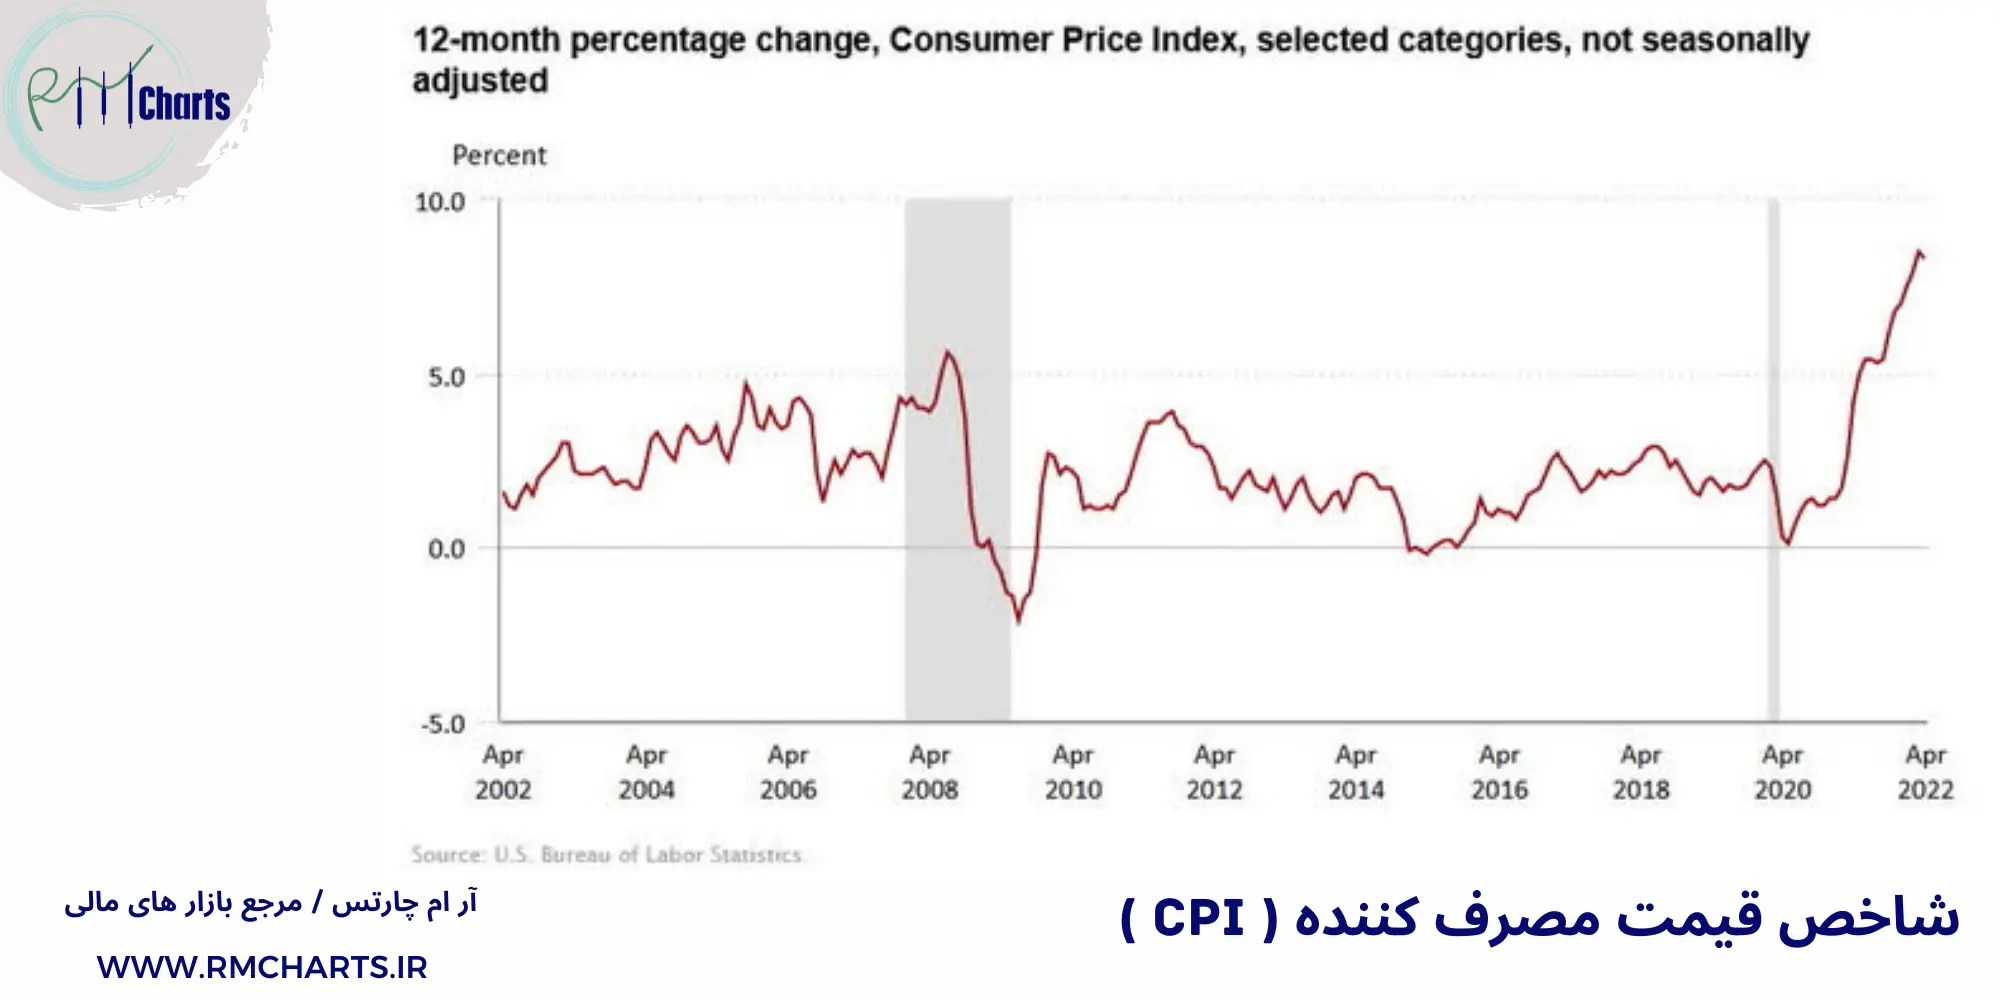 قیمت مصرف کننده